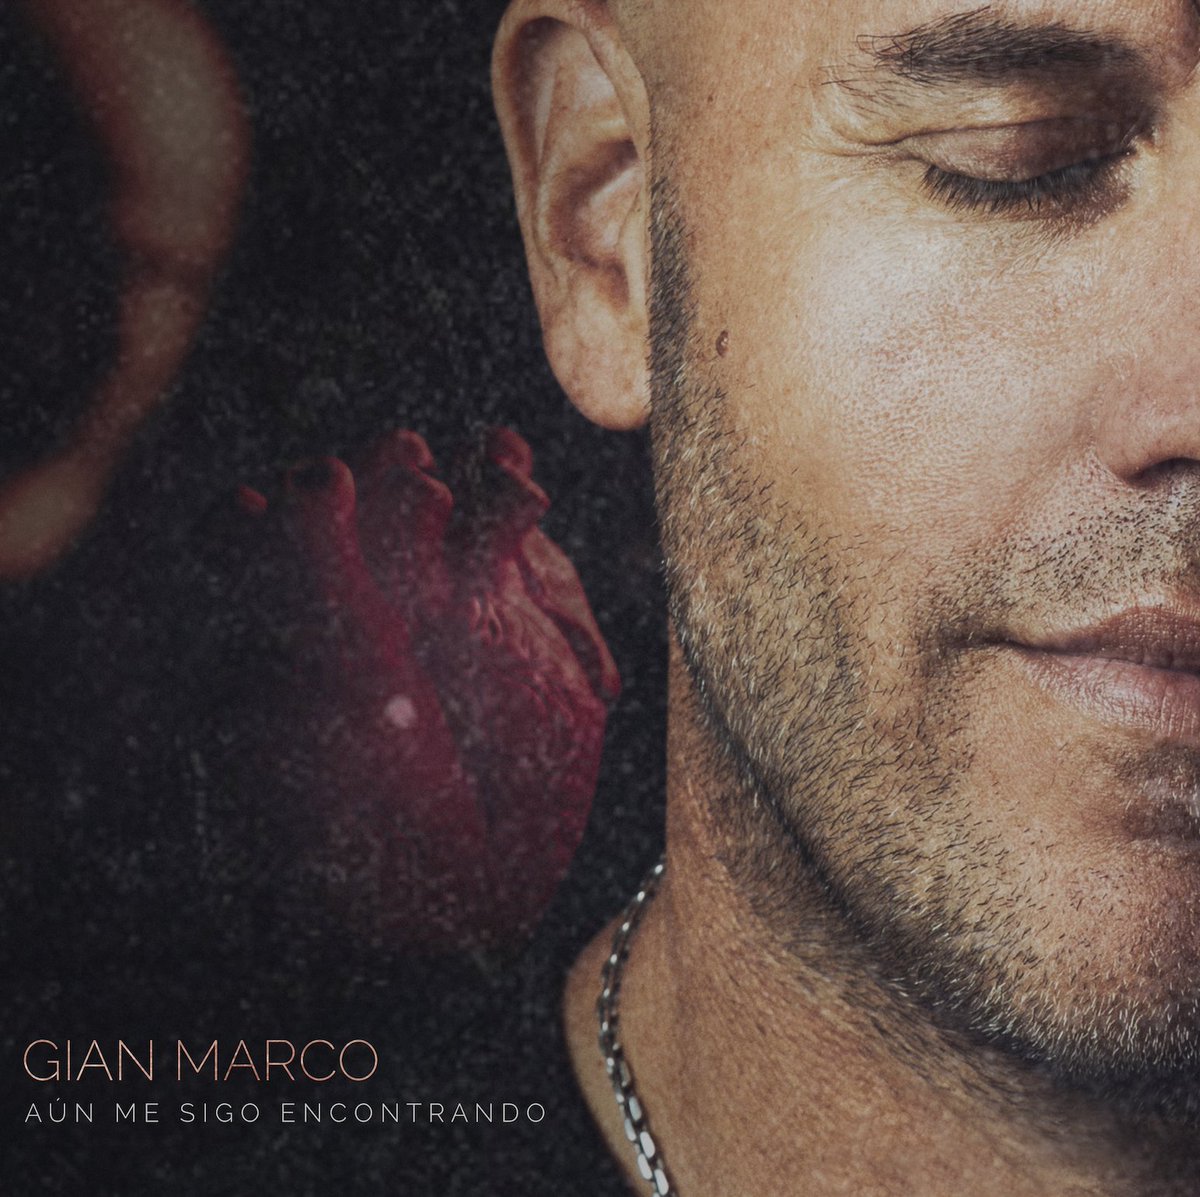 E-blast: @gianmarcomusica estrena su álbum más ambicioso, “AÚN ME SIGO ENCONTRANDO”, con grandes colaboraciones! us19.campaign-archive.com/?e=__test_emai… #GianMarco #AunMeSigoEncontrando #NewAlbum #Music #Peru #Cantautor #1111PRAgency